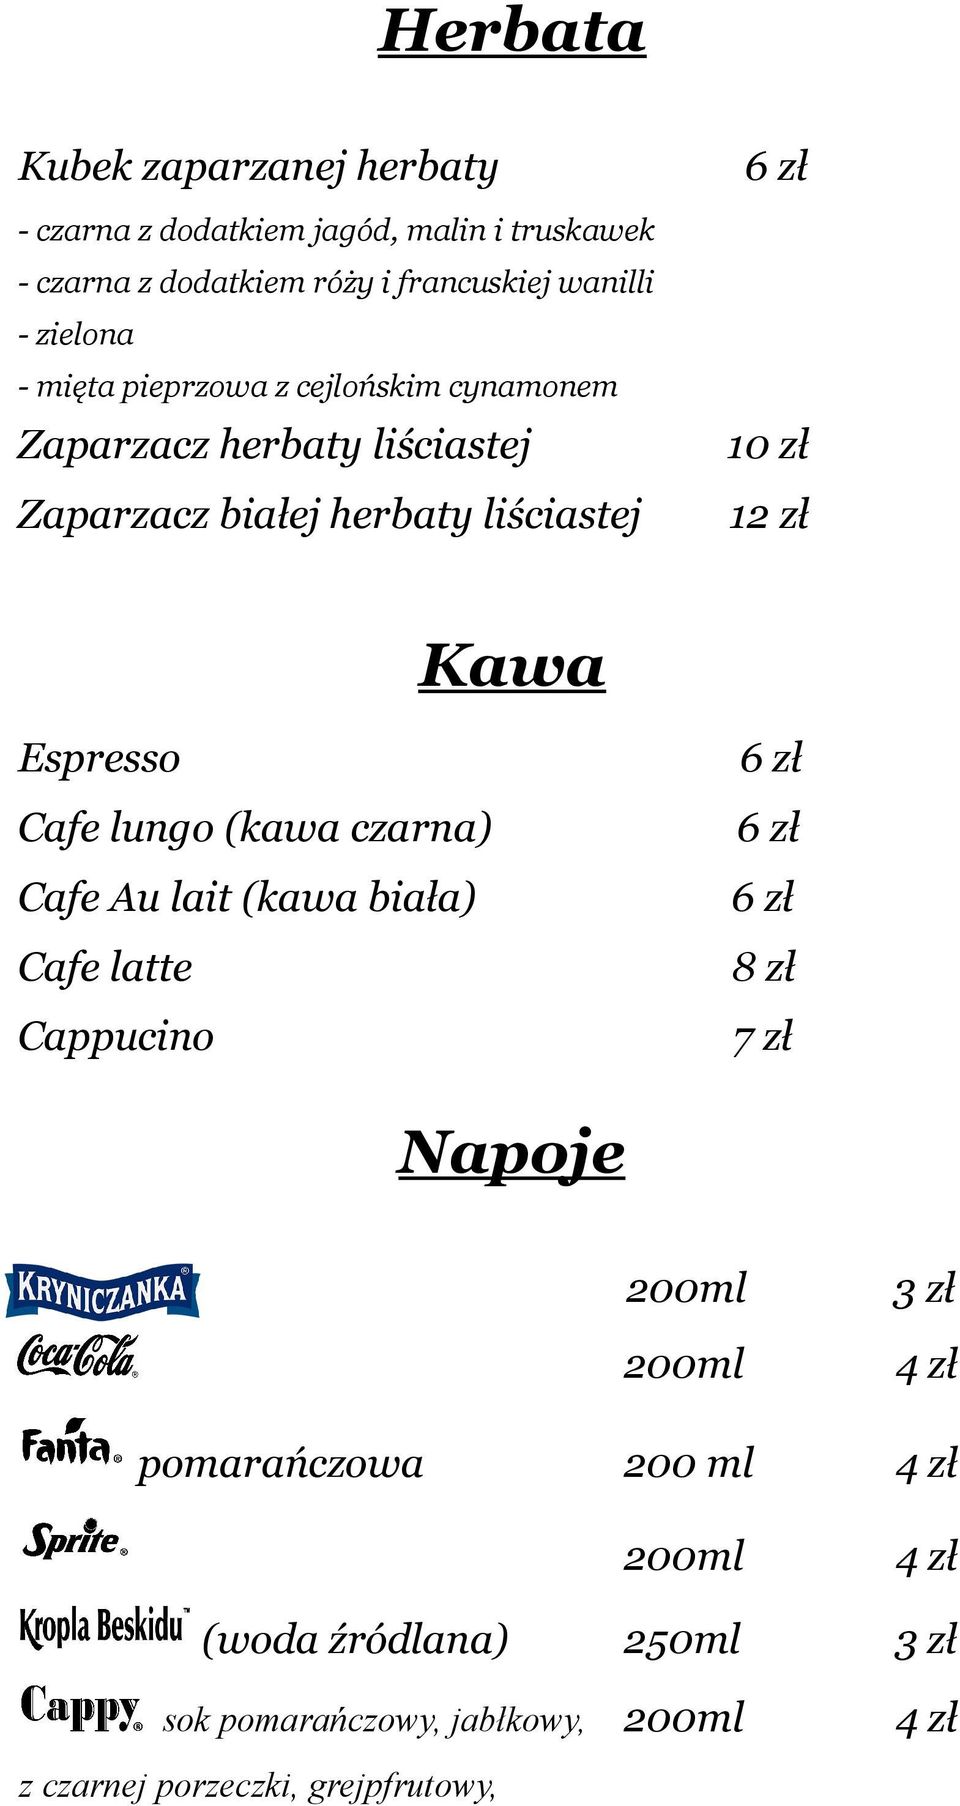 Kawa Espresso Cafe lungo (kawa czarna) Cafe Au lait (kawa biała) Cafe latte Cappucino 6 zł 6 zł 6 zł 8 zł 7 zł Napoje 200ml 200ml 3